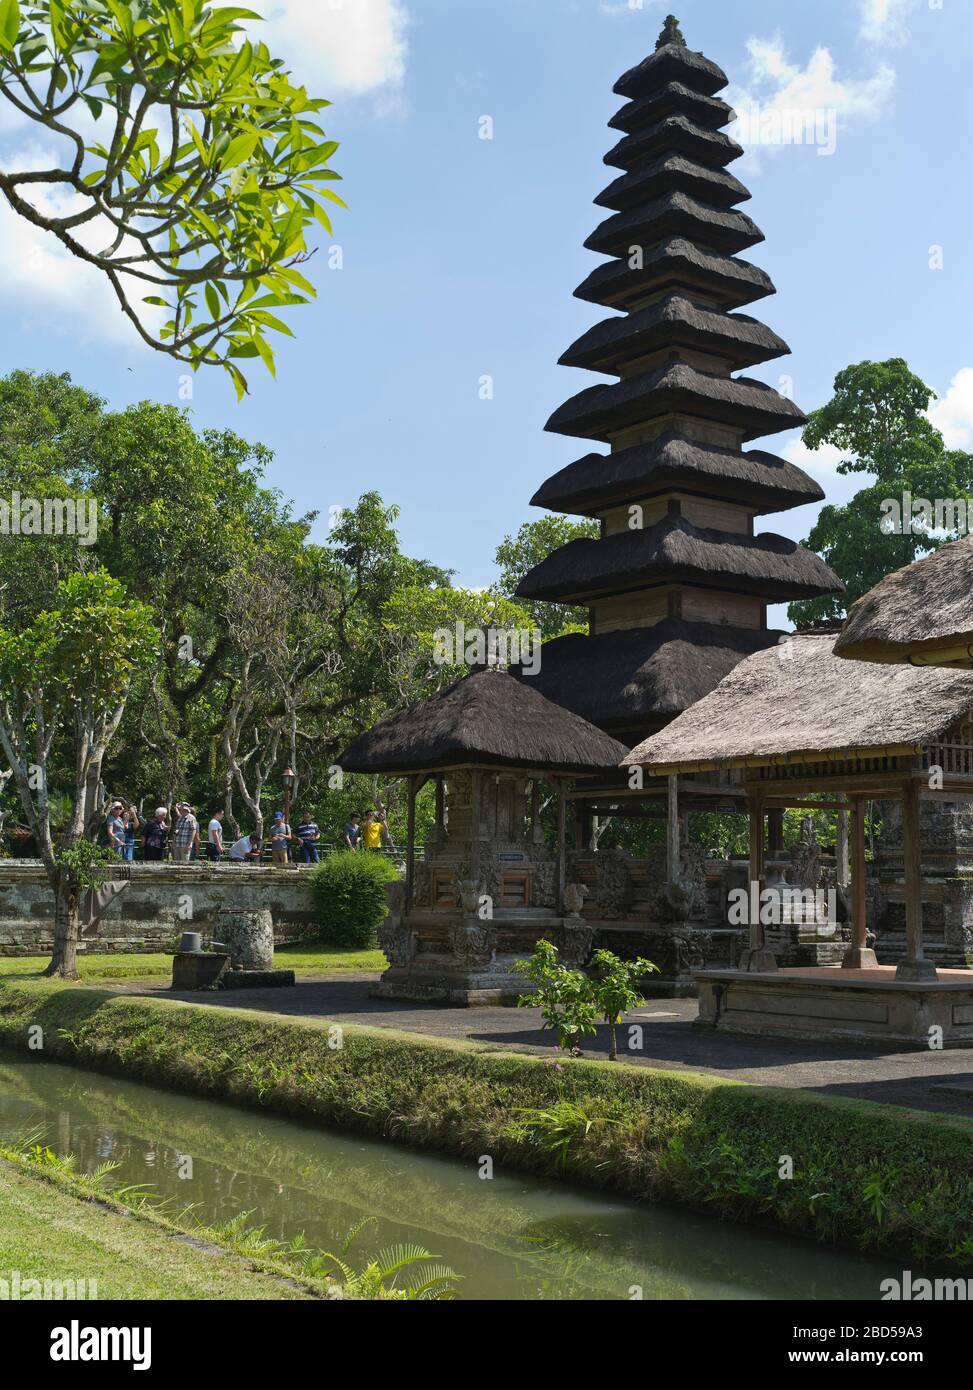 tempio reale di dh pura Taman Ayun BALI INDONESIA Indù Balinese Templi Mengwi interno santum pelinggih meru torre santuario torri santuari torretta Foto Stock